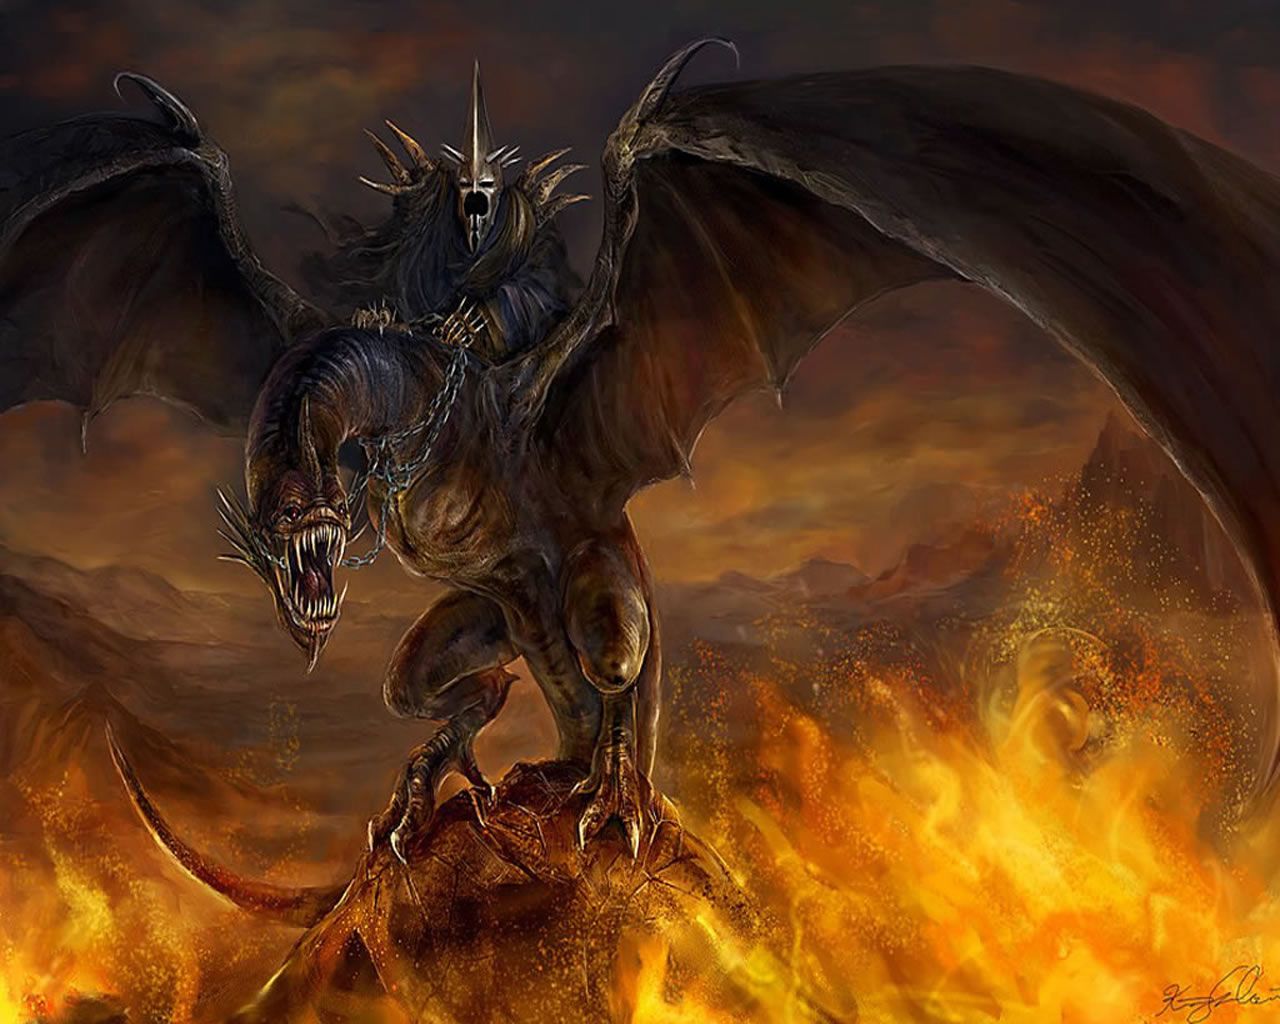 il signore degli anelli wallpaper hd,drago,cg artwork,demone,mitologia,creatura mitica